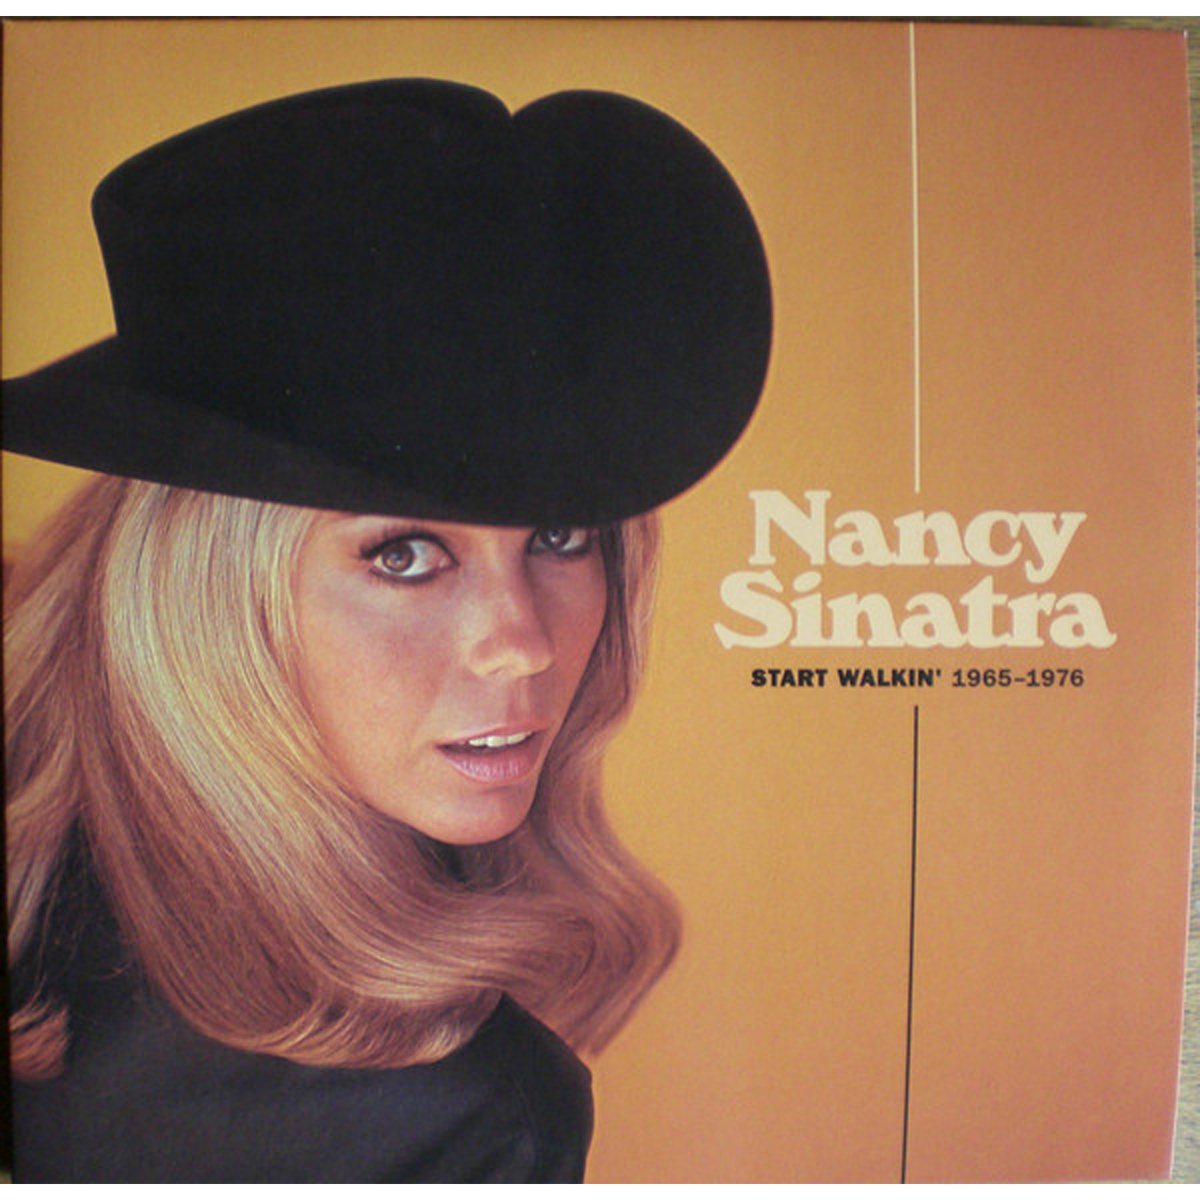 Sinatra Nancy Start Walkin' 1965-1976 2LP